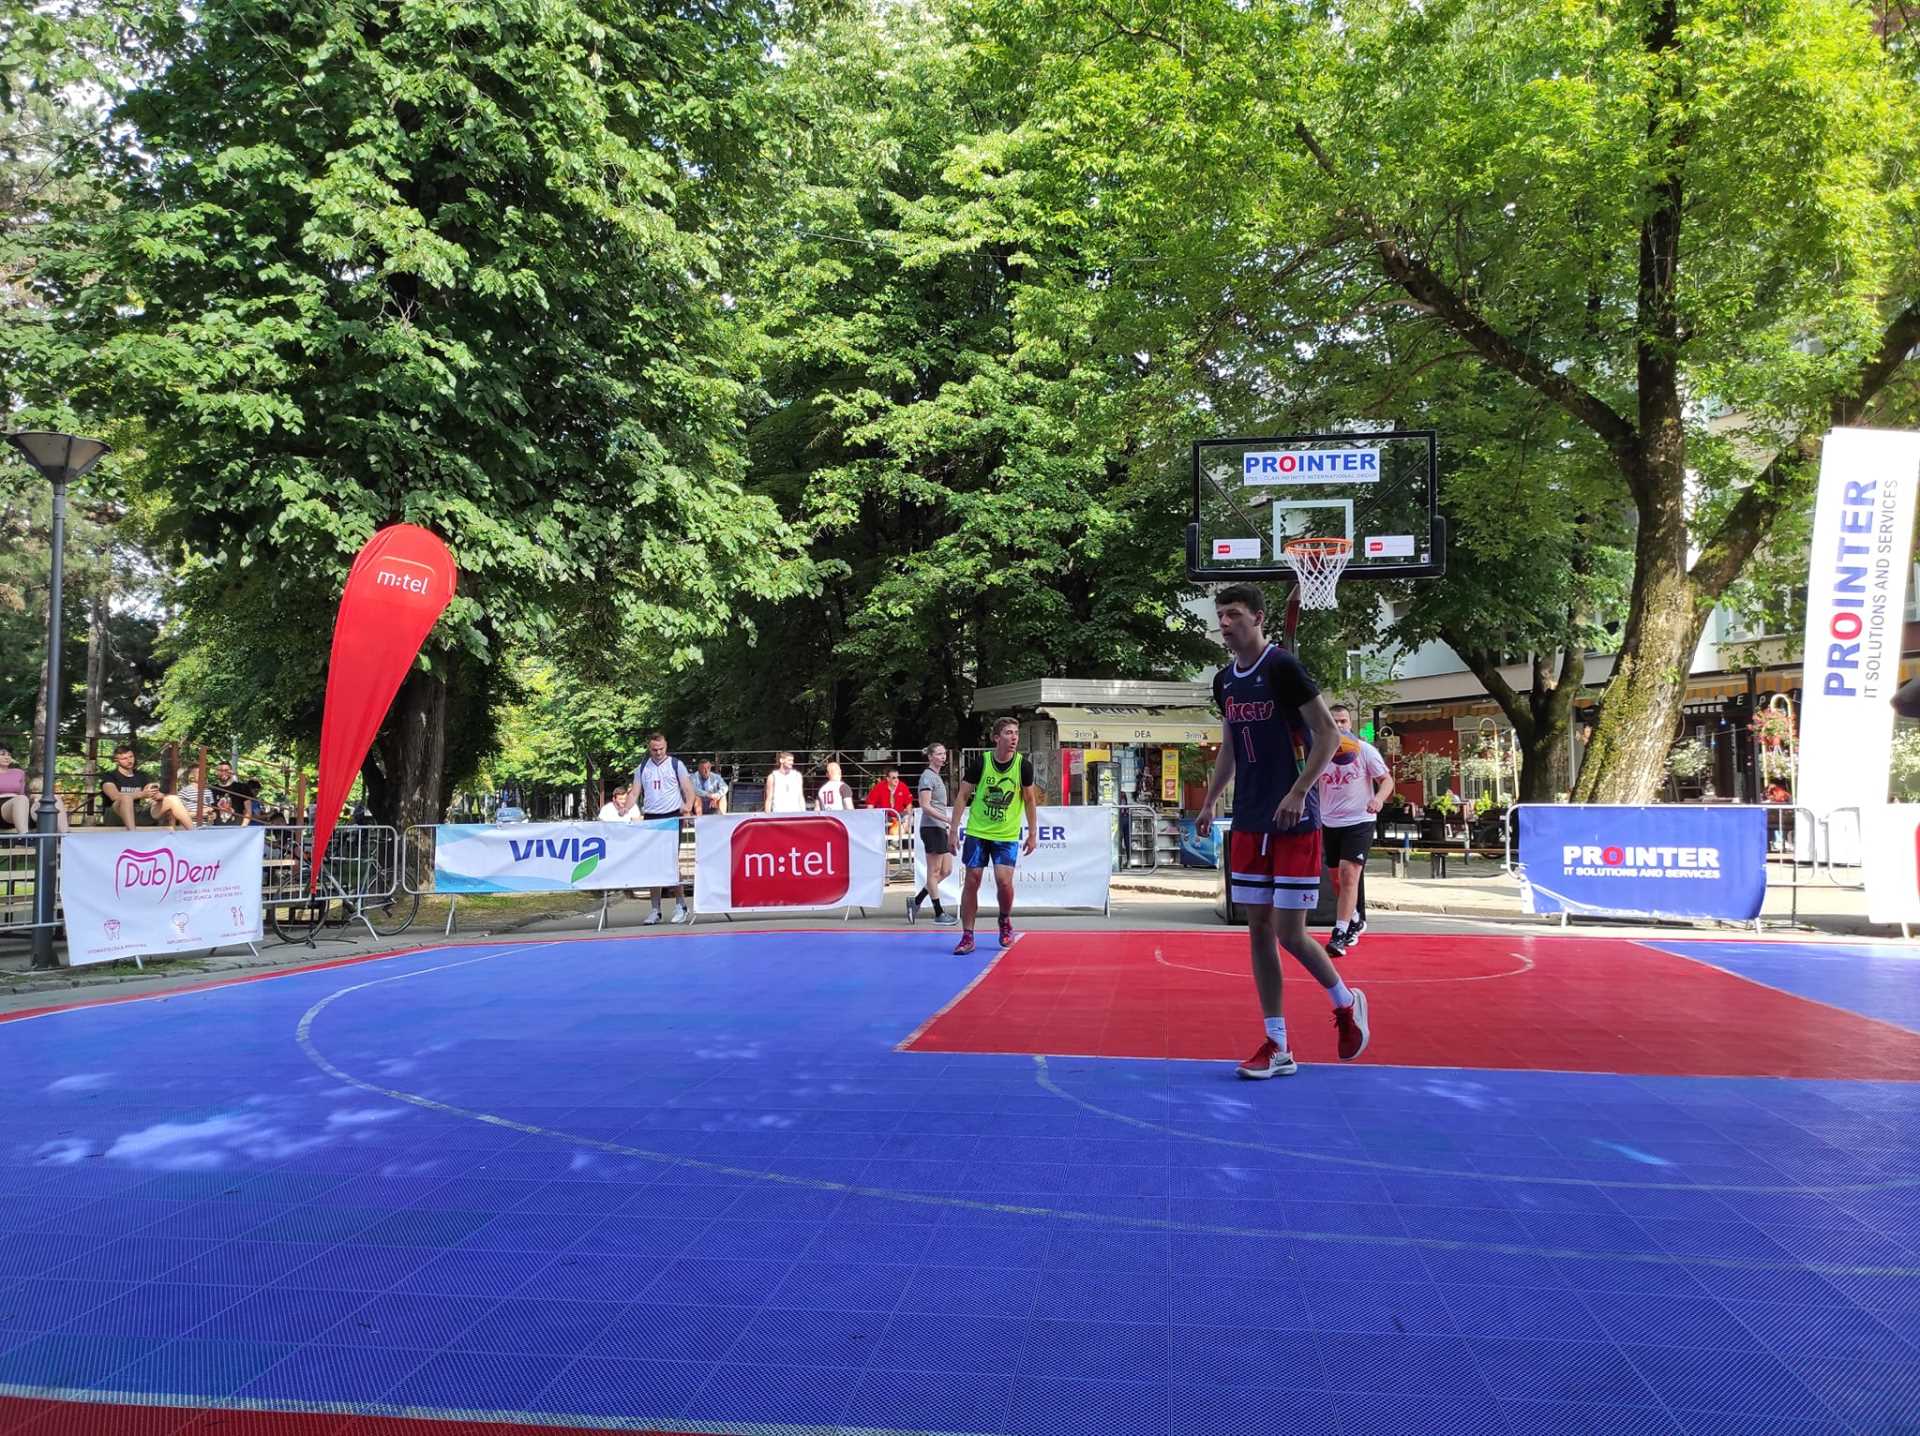  Turnir u uličnom basketu u Banjaluci  